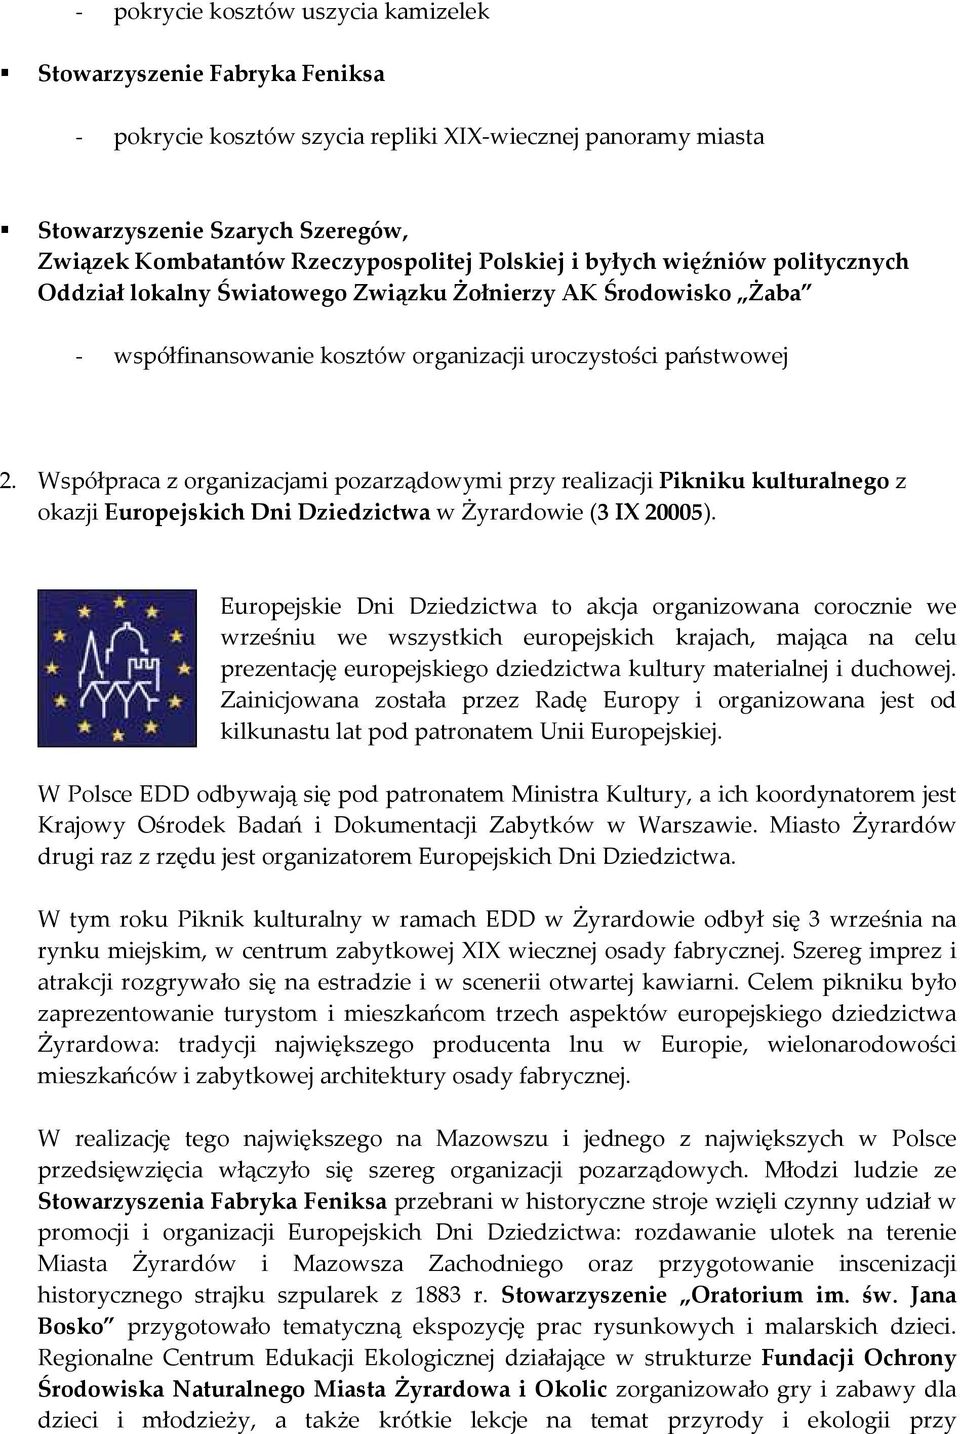 Współpraca z organizacjami pozarządowymi przy realizacji Pikniku kulturalnego z okazji Europejskich Dni Dziedzictwa w Żyrardowie (3 IX 20005).